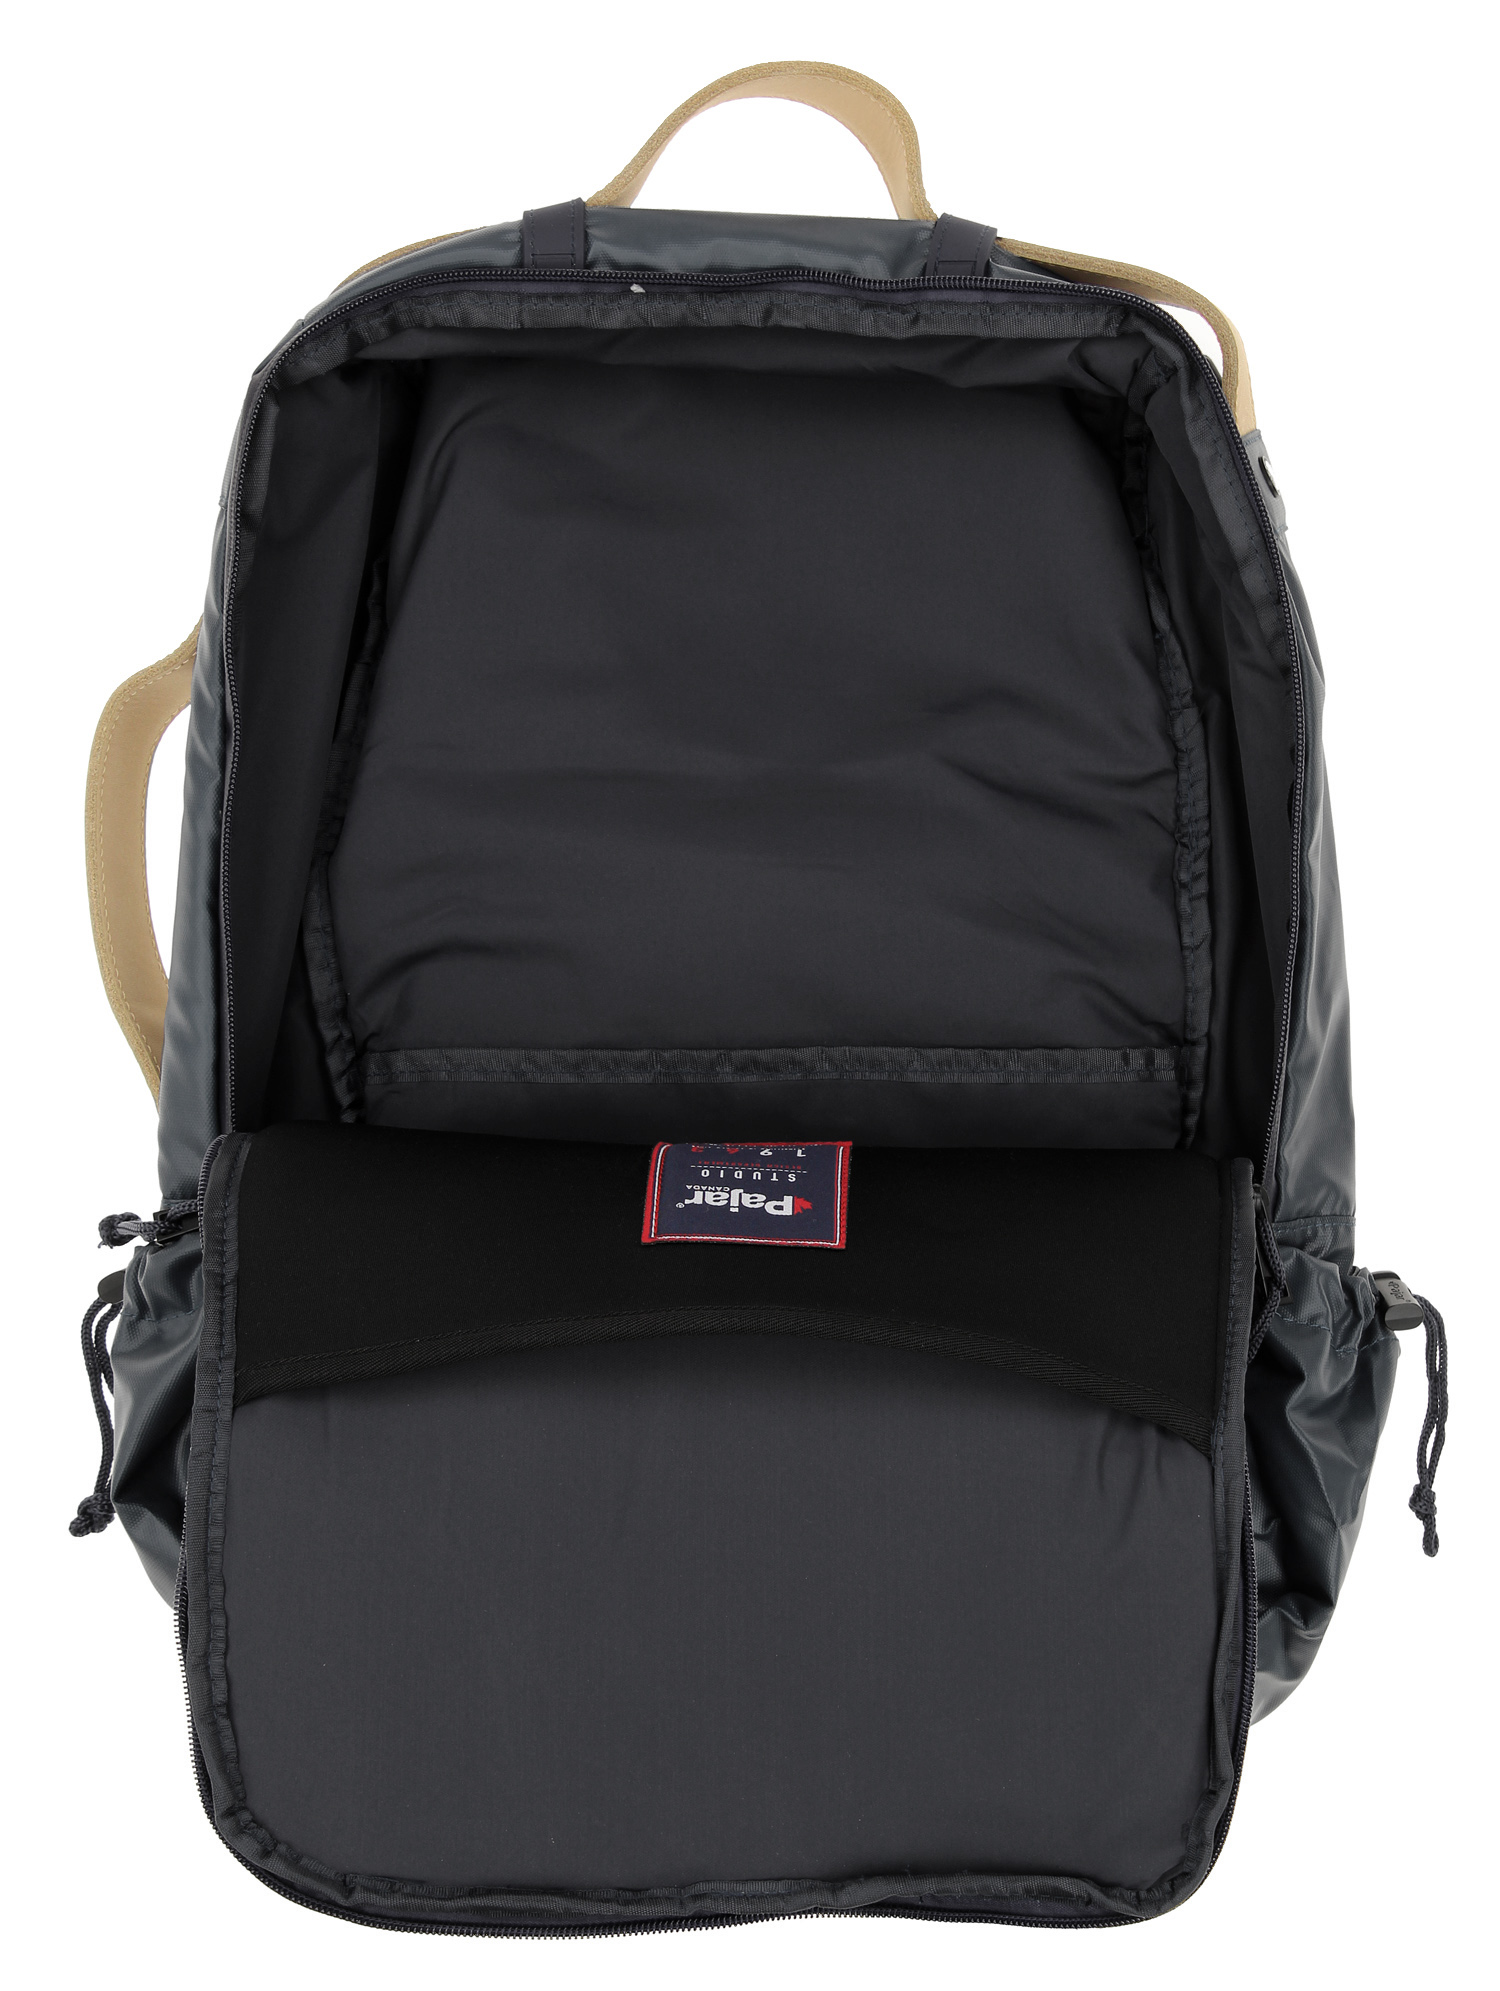 Pajar Cyber Waterproof Backpack, Black | eBay